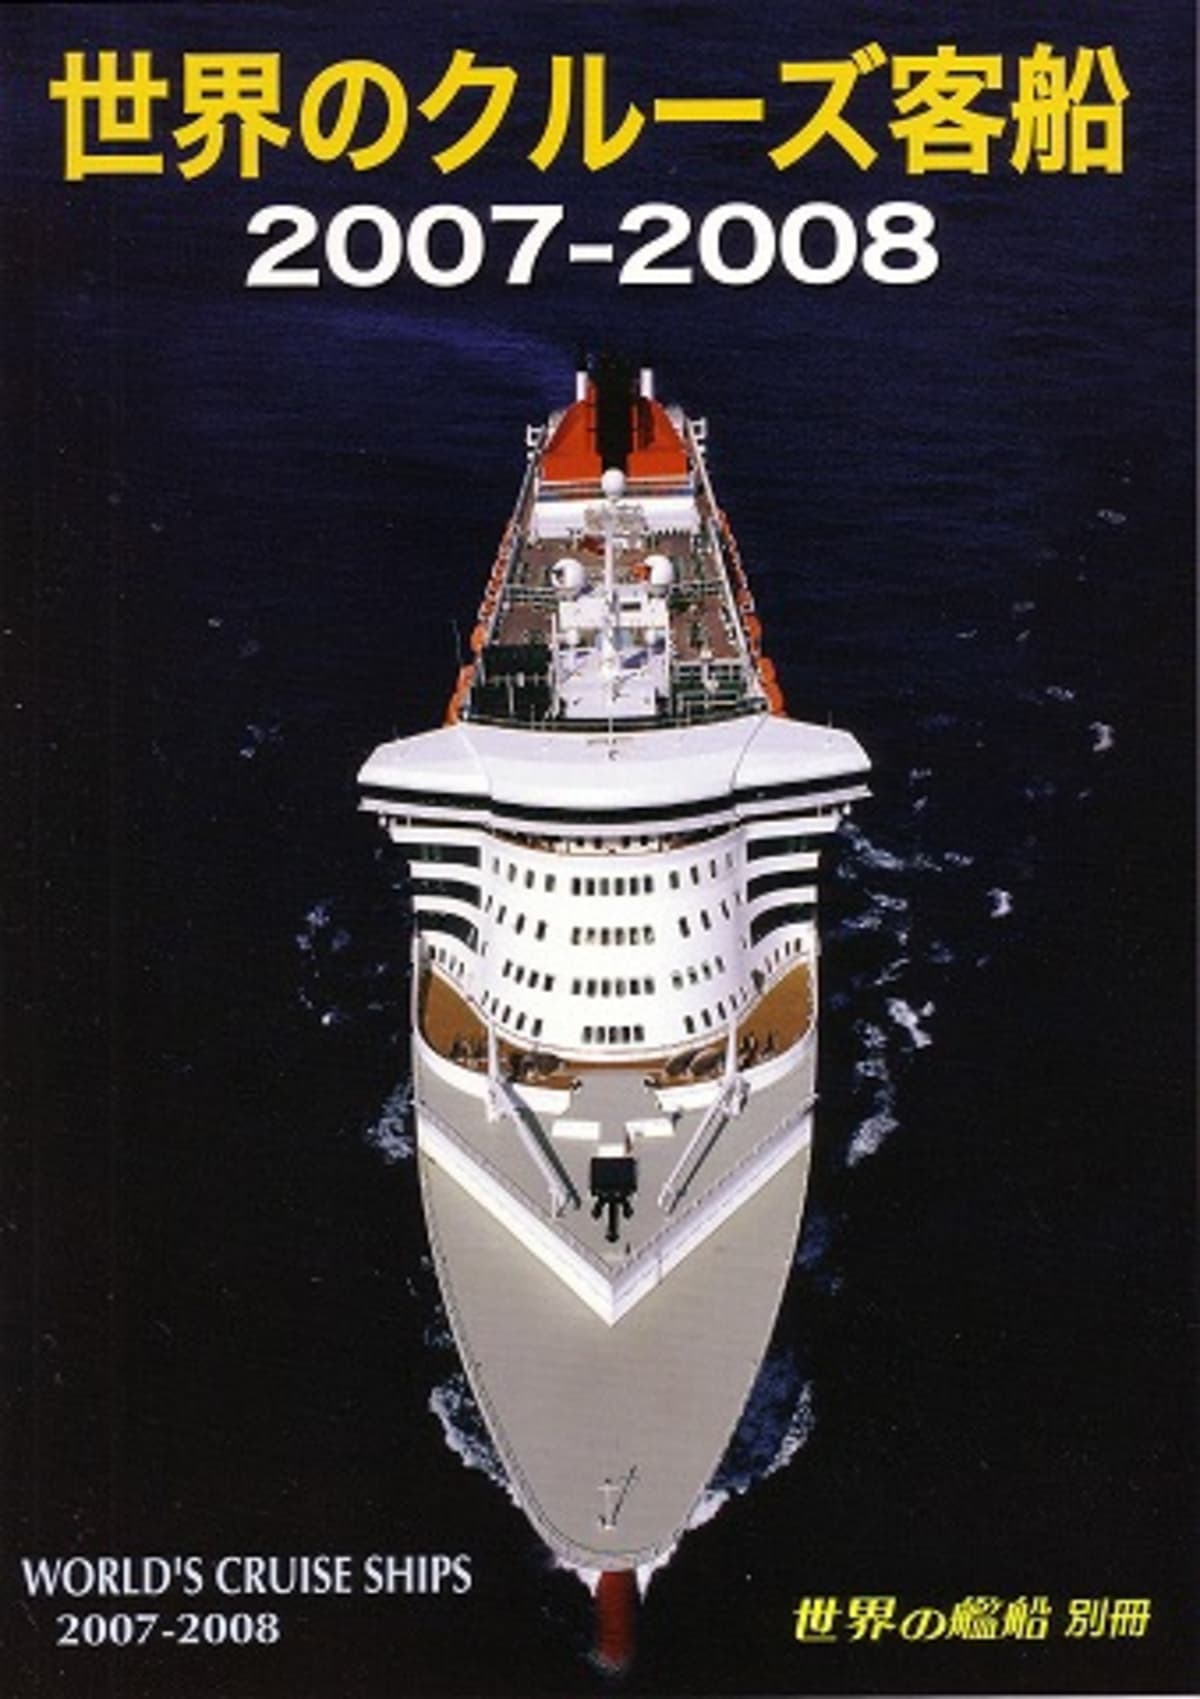 船の本 世界の艦船 別冊 「世界のクルーズ客船 2007-2008」